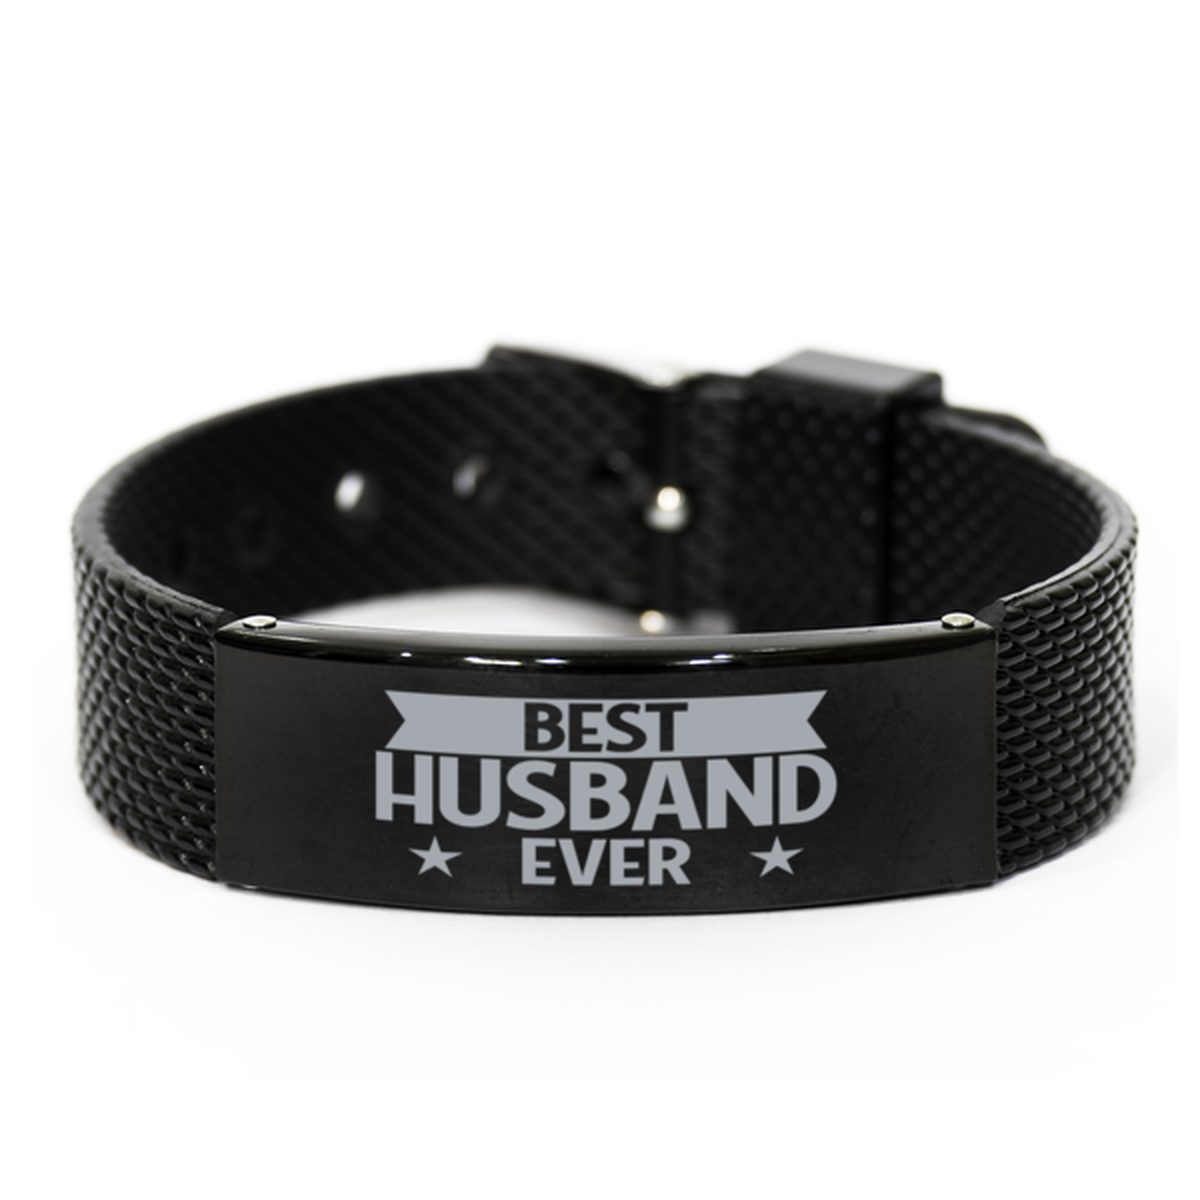 Best Husband Ever Husband Gifts, Gag Engraved Bracelet For Husband, Best Family Gifts For Men